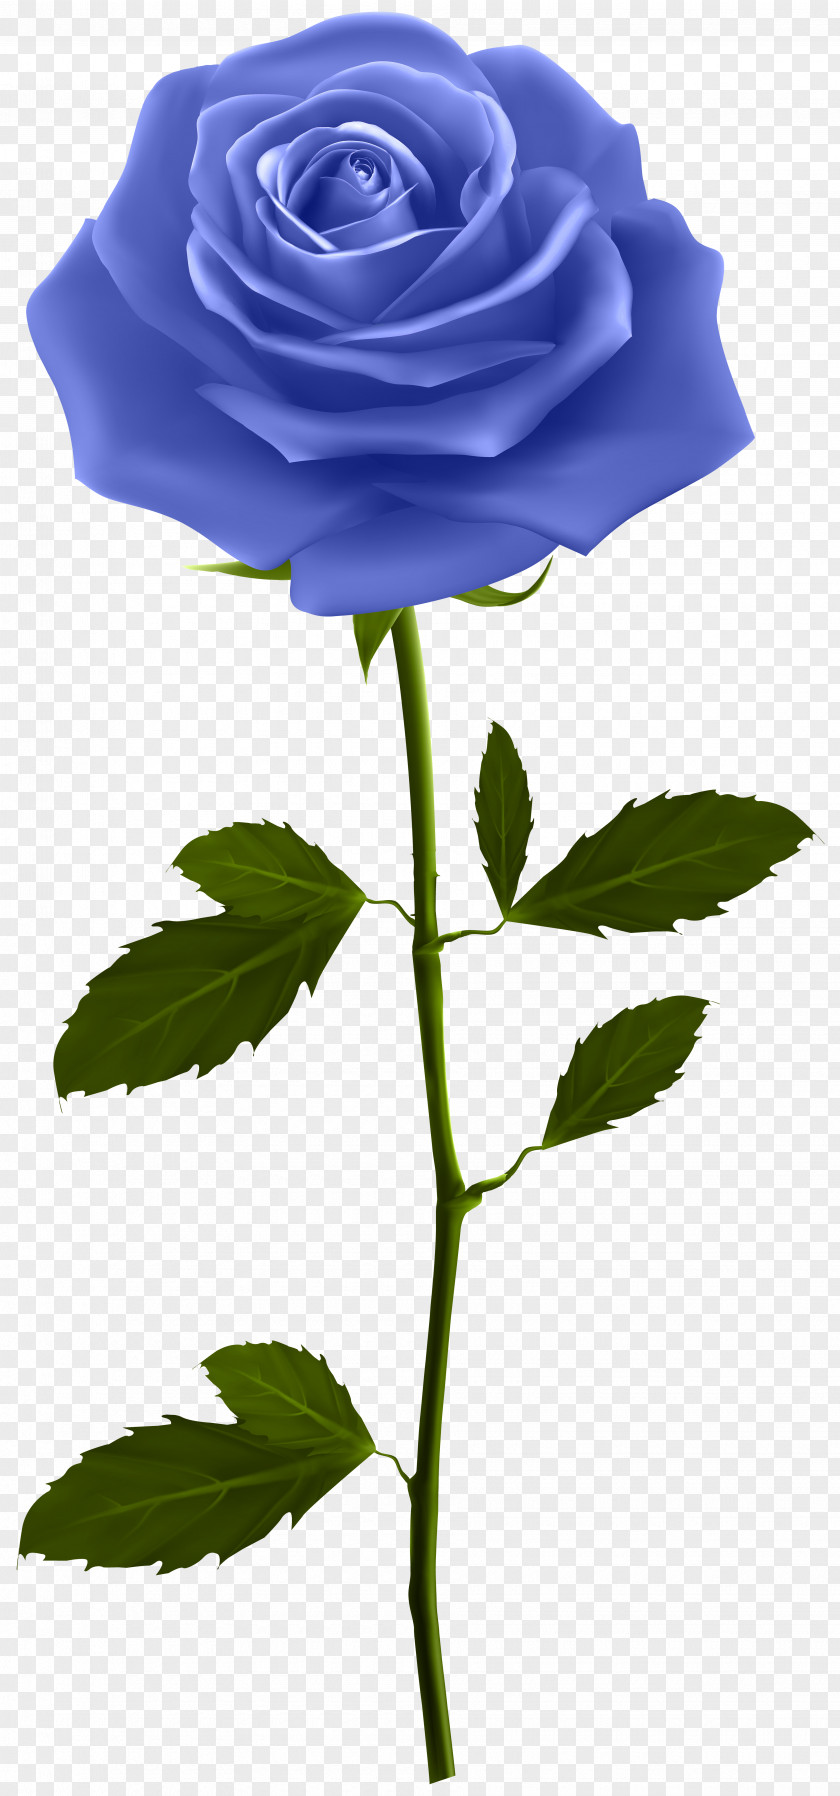 Blue Rose With Stem Clip Art Image Flower PNG